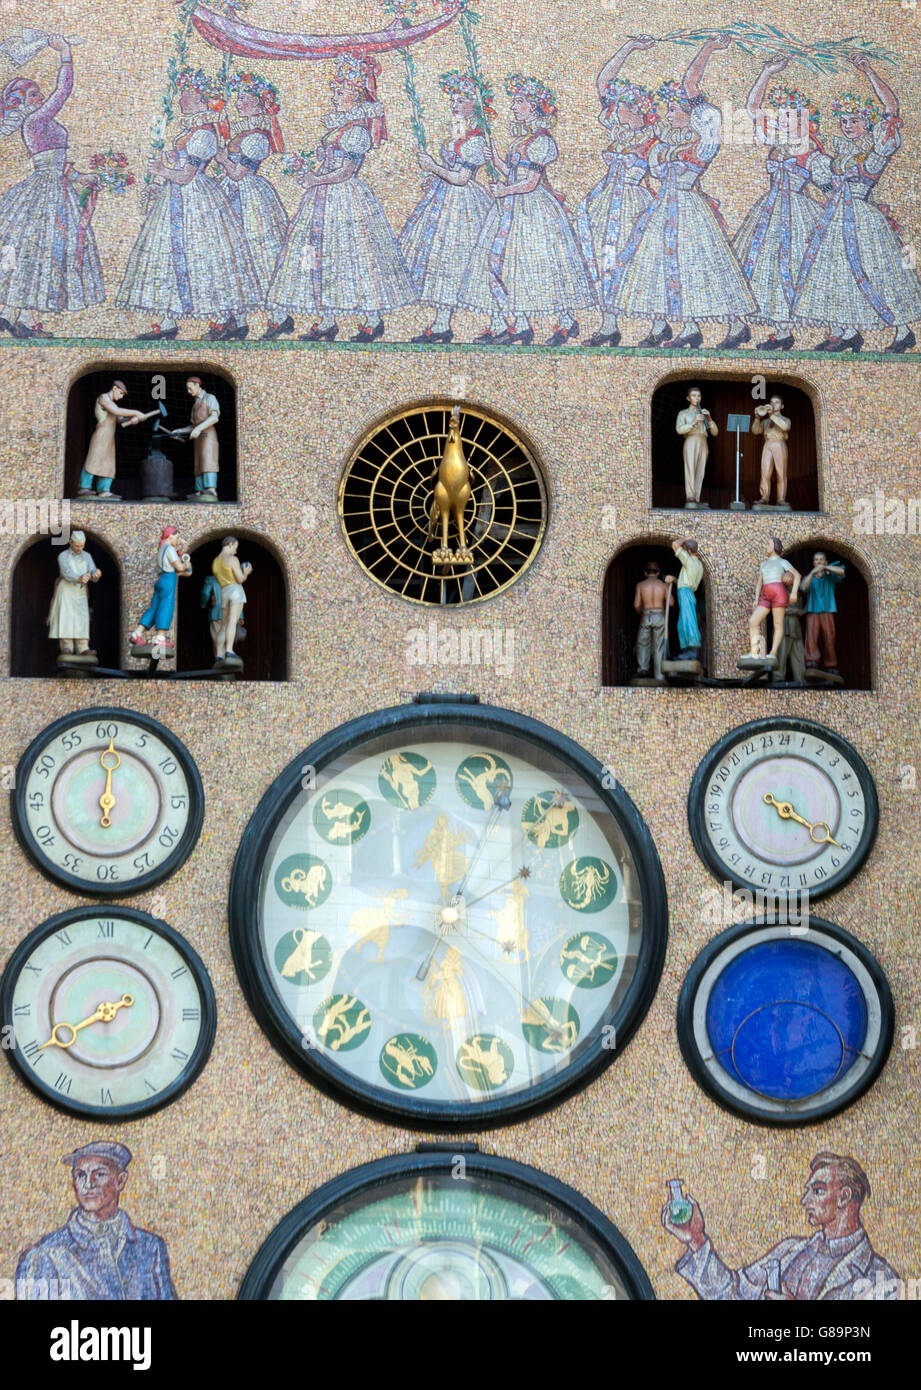 L'horloge astronomique Olomouc Dials et les indicateurs de temps.Olomouc Moravia, République tchèque, Europe Banque D'Images